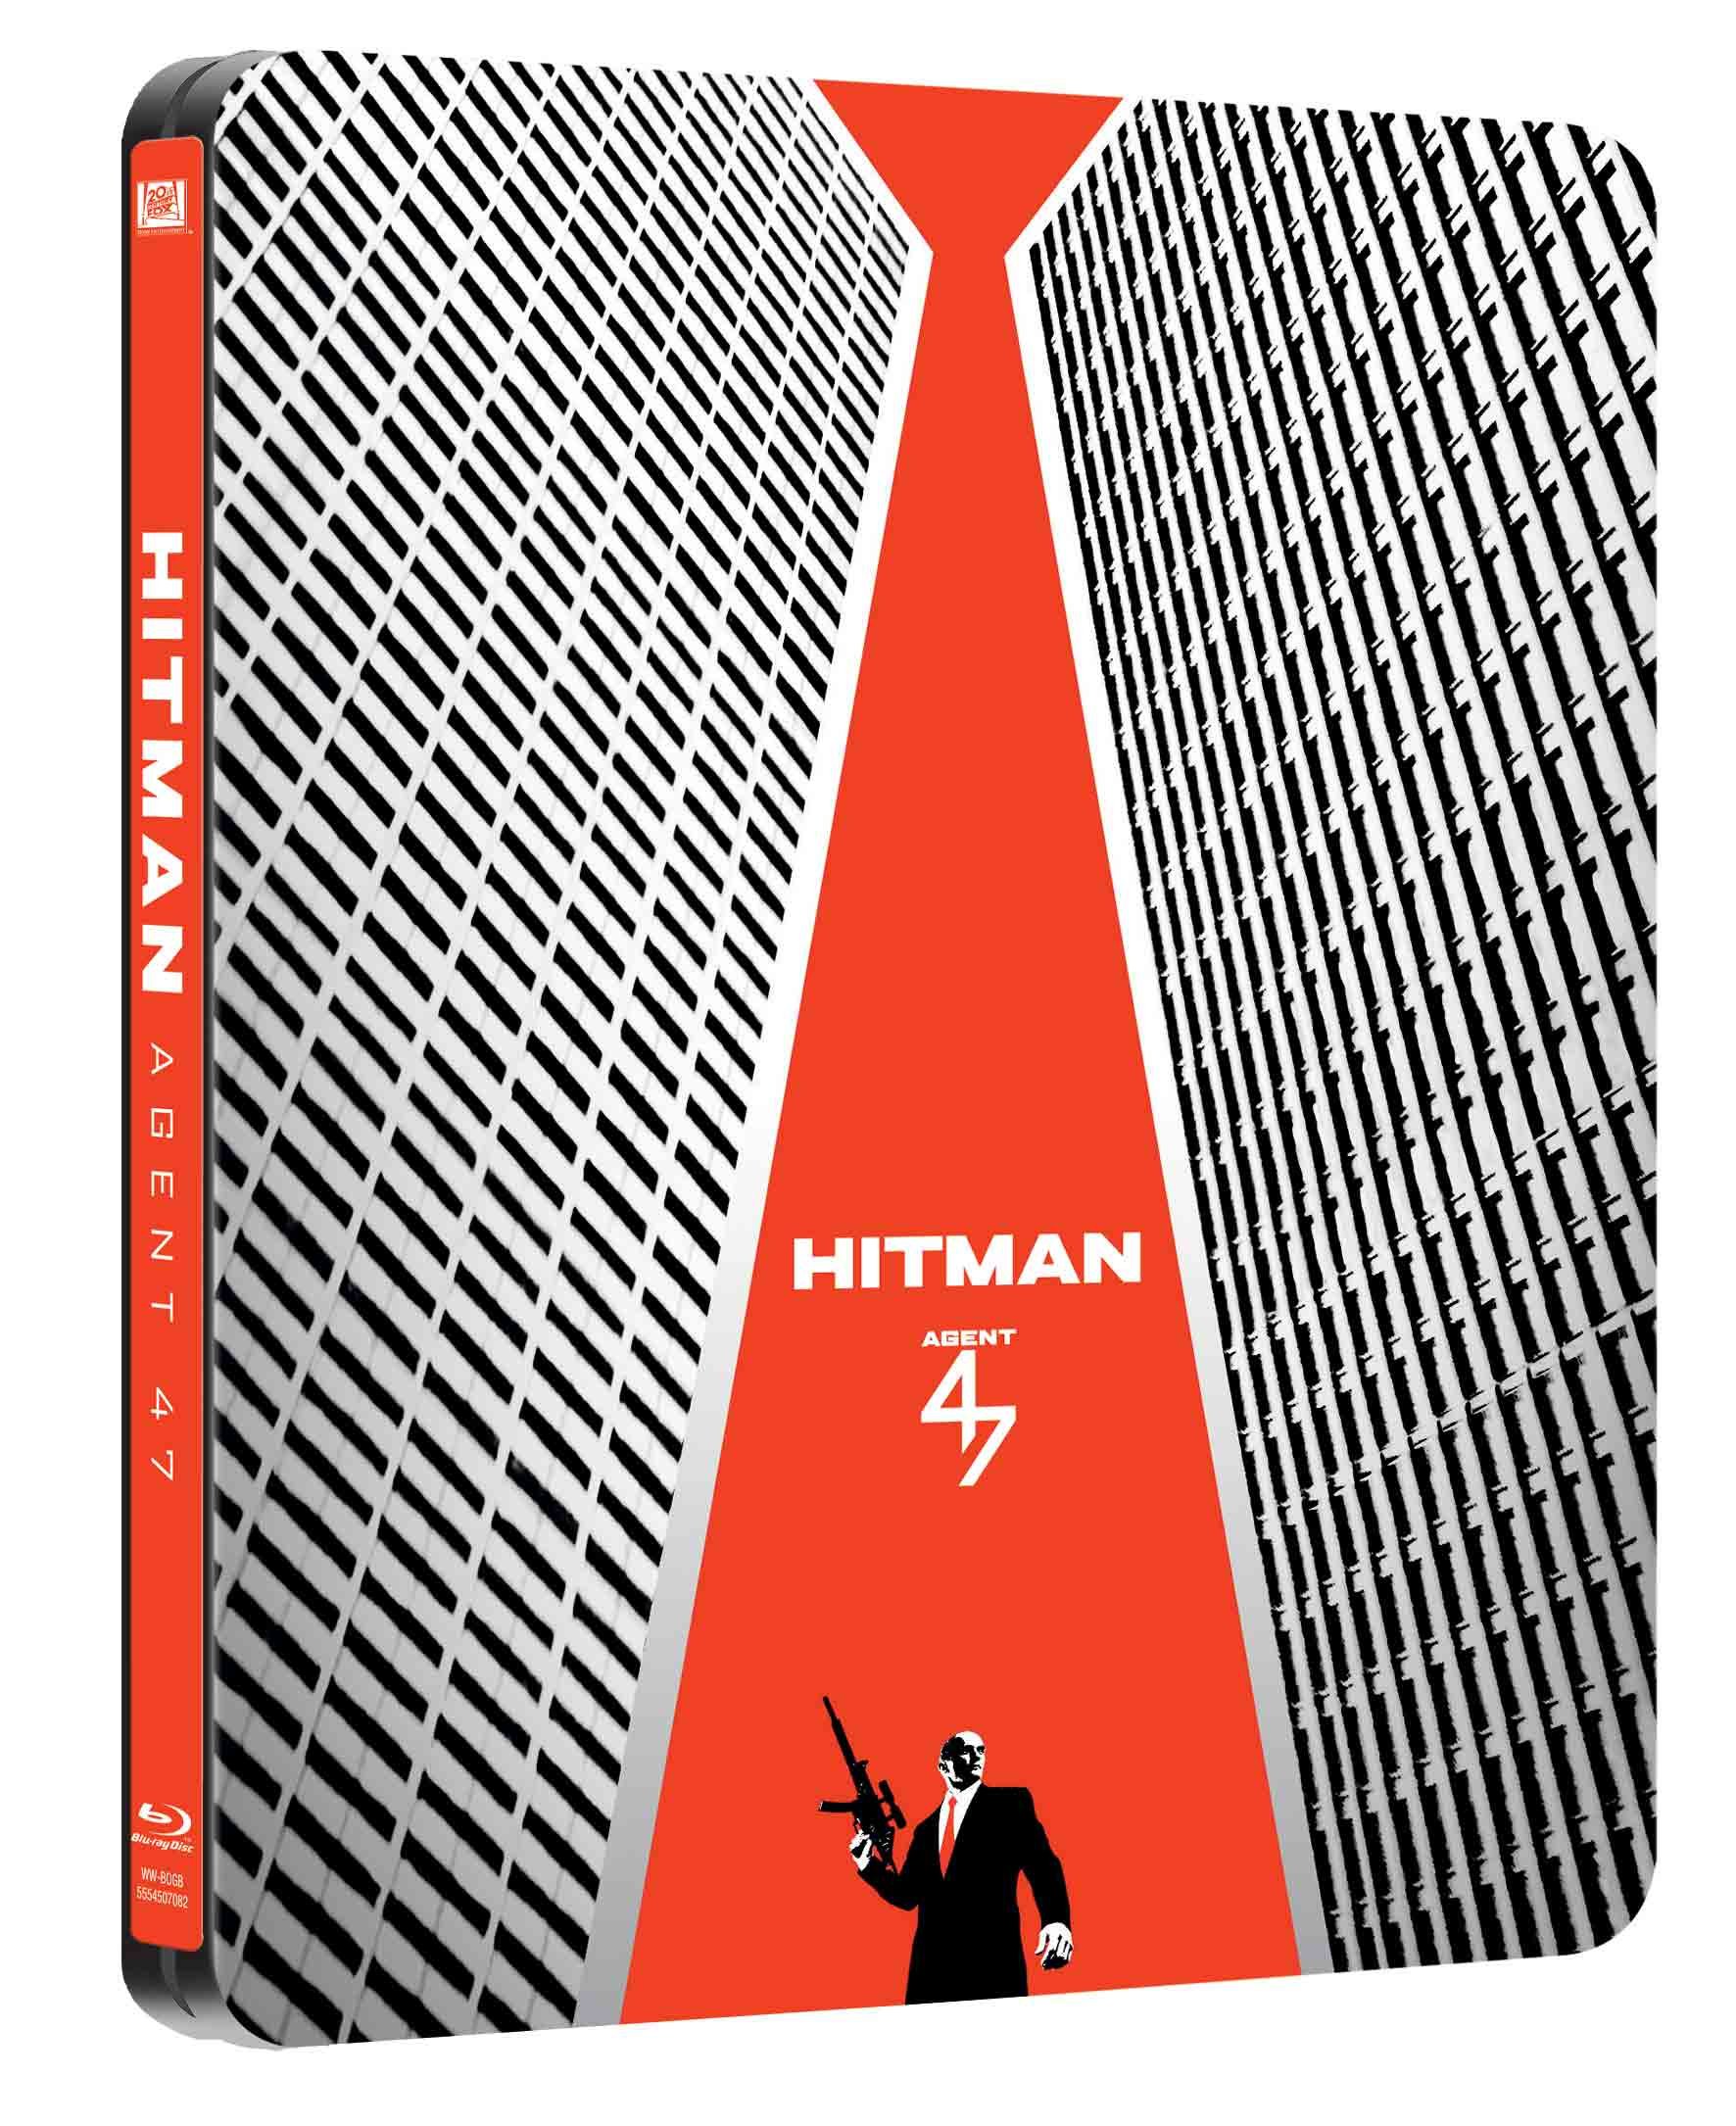 hitman-agent-47-steelbook-movie-purchase-or-watch-online